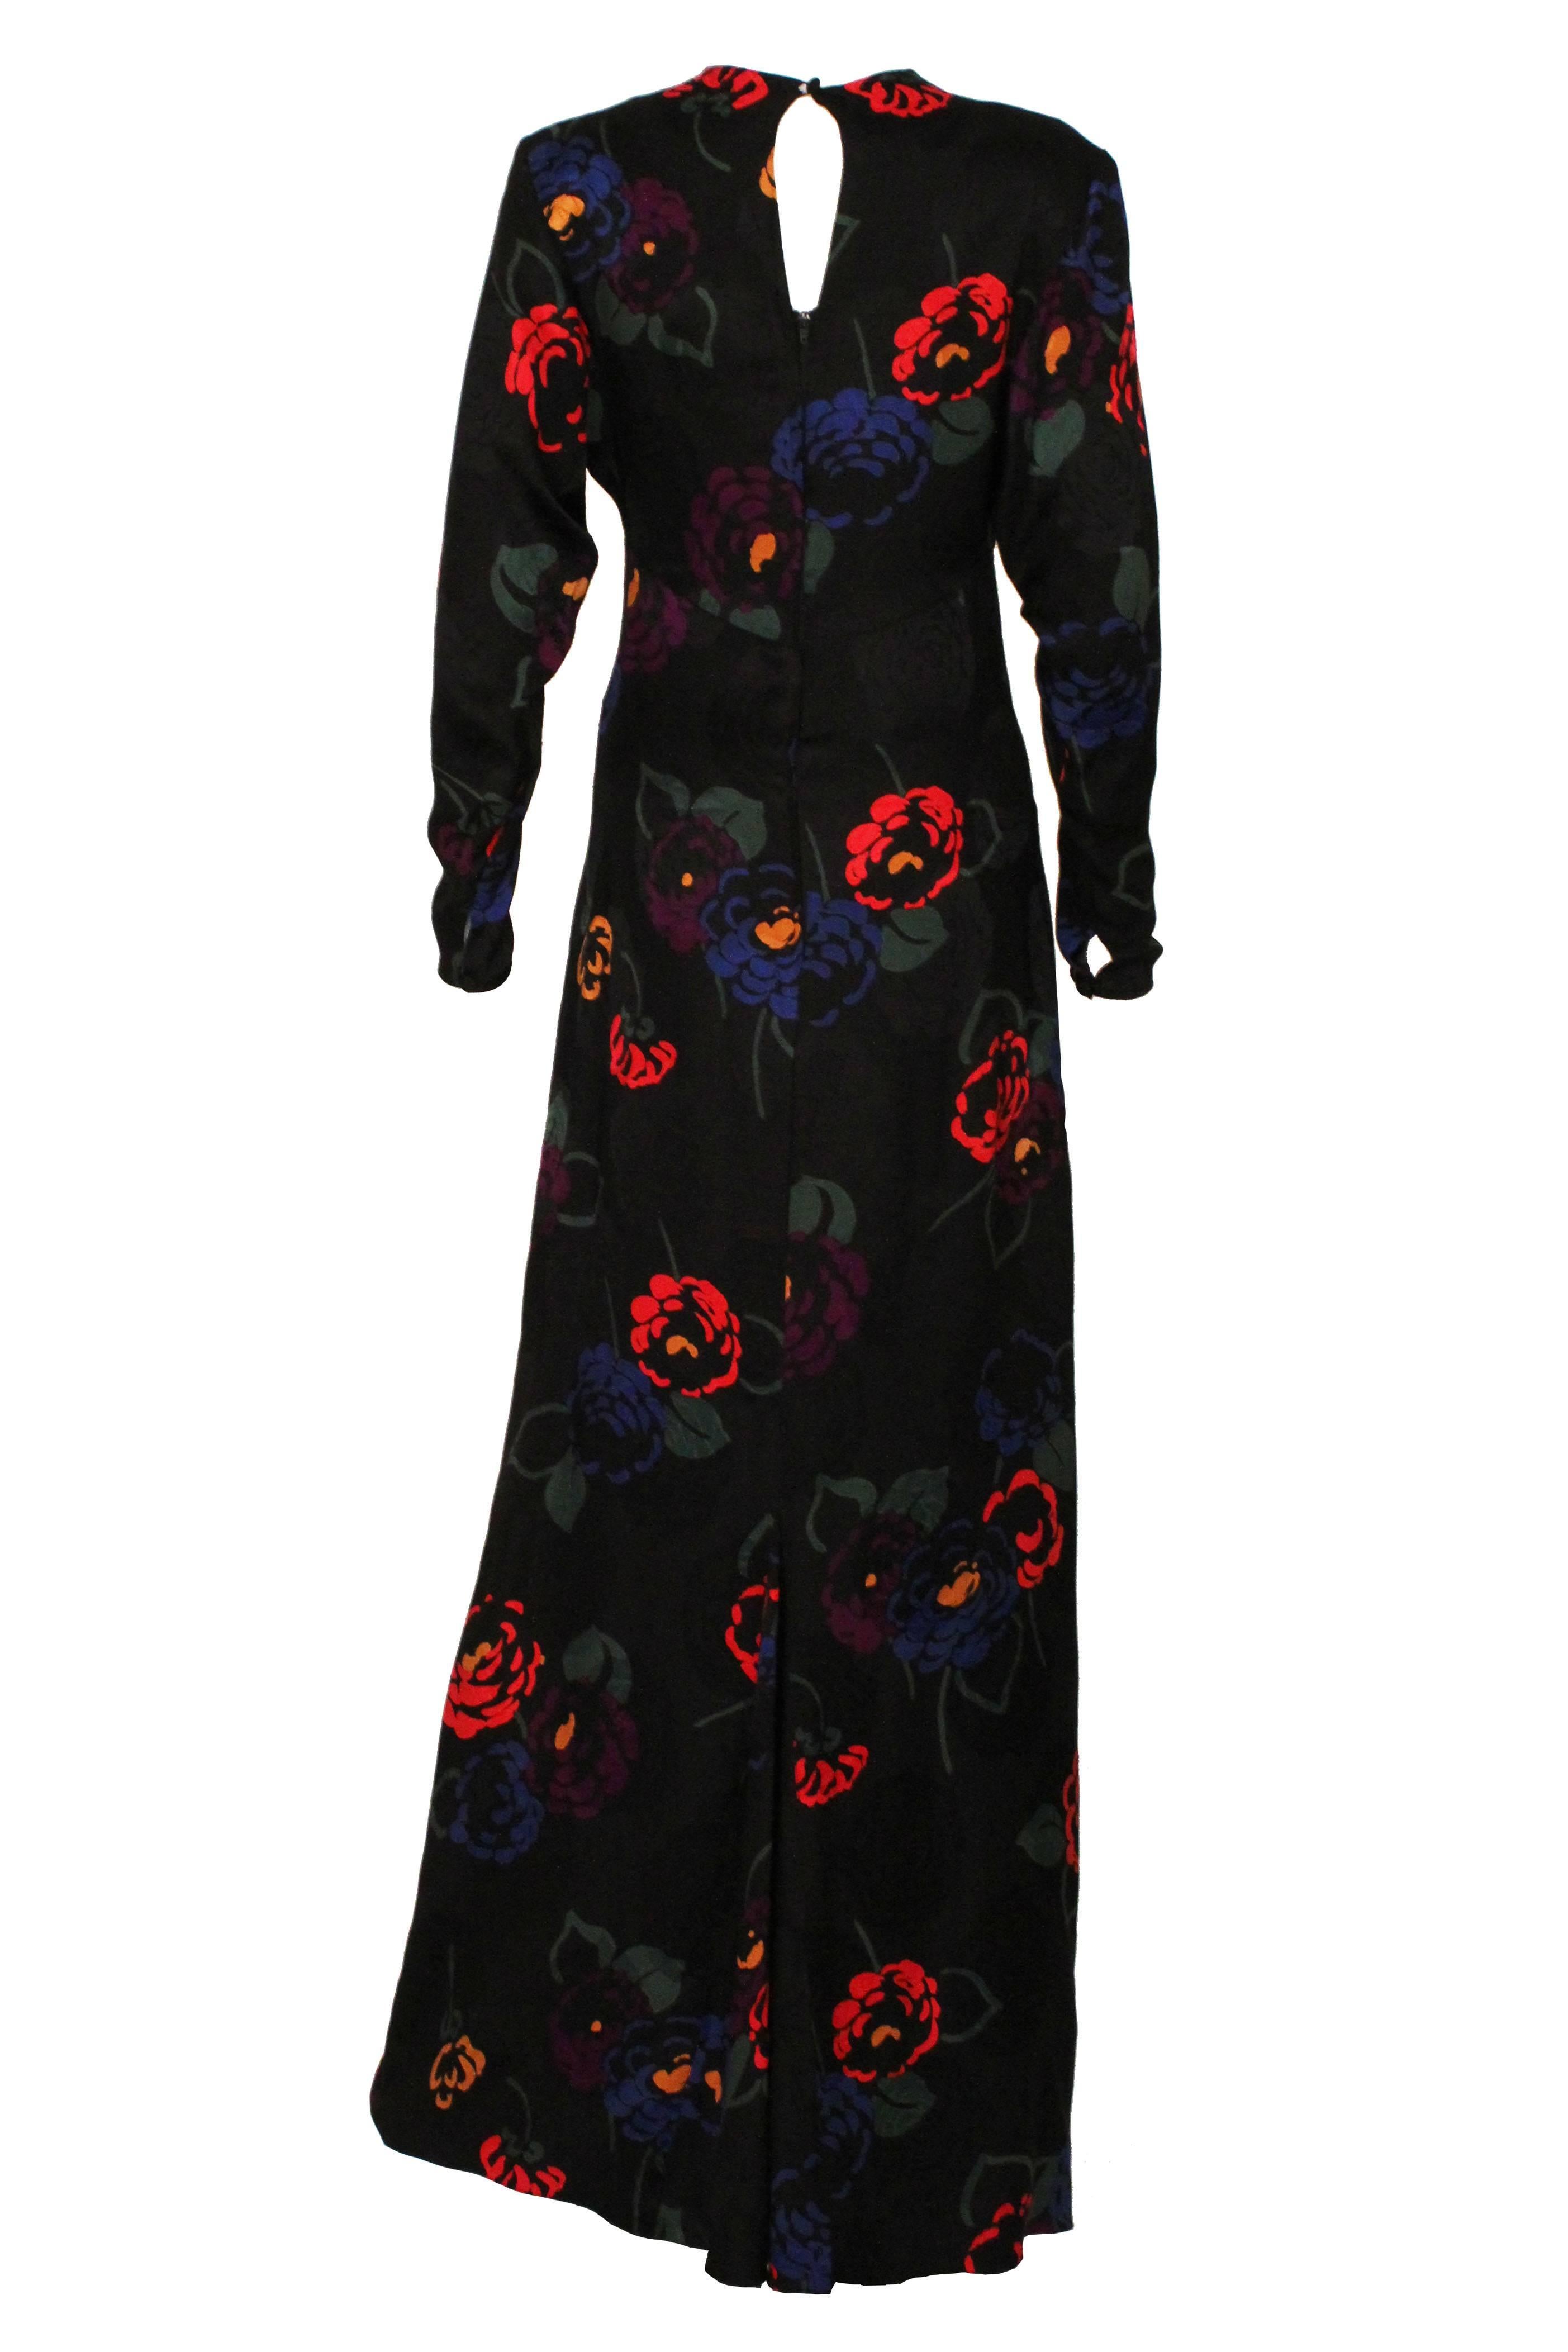 Women's 1970s Black Silk Floral Evening Dress